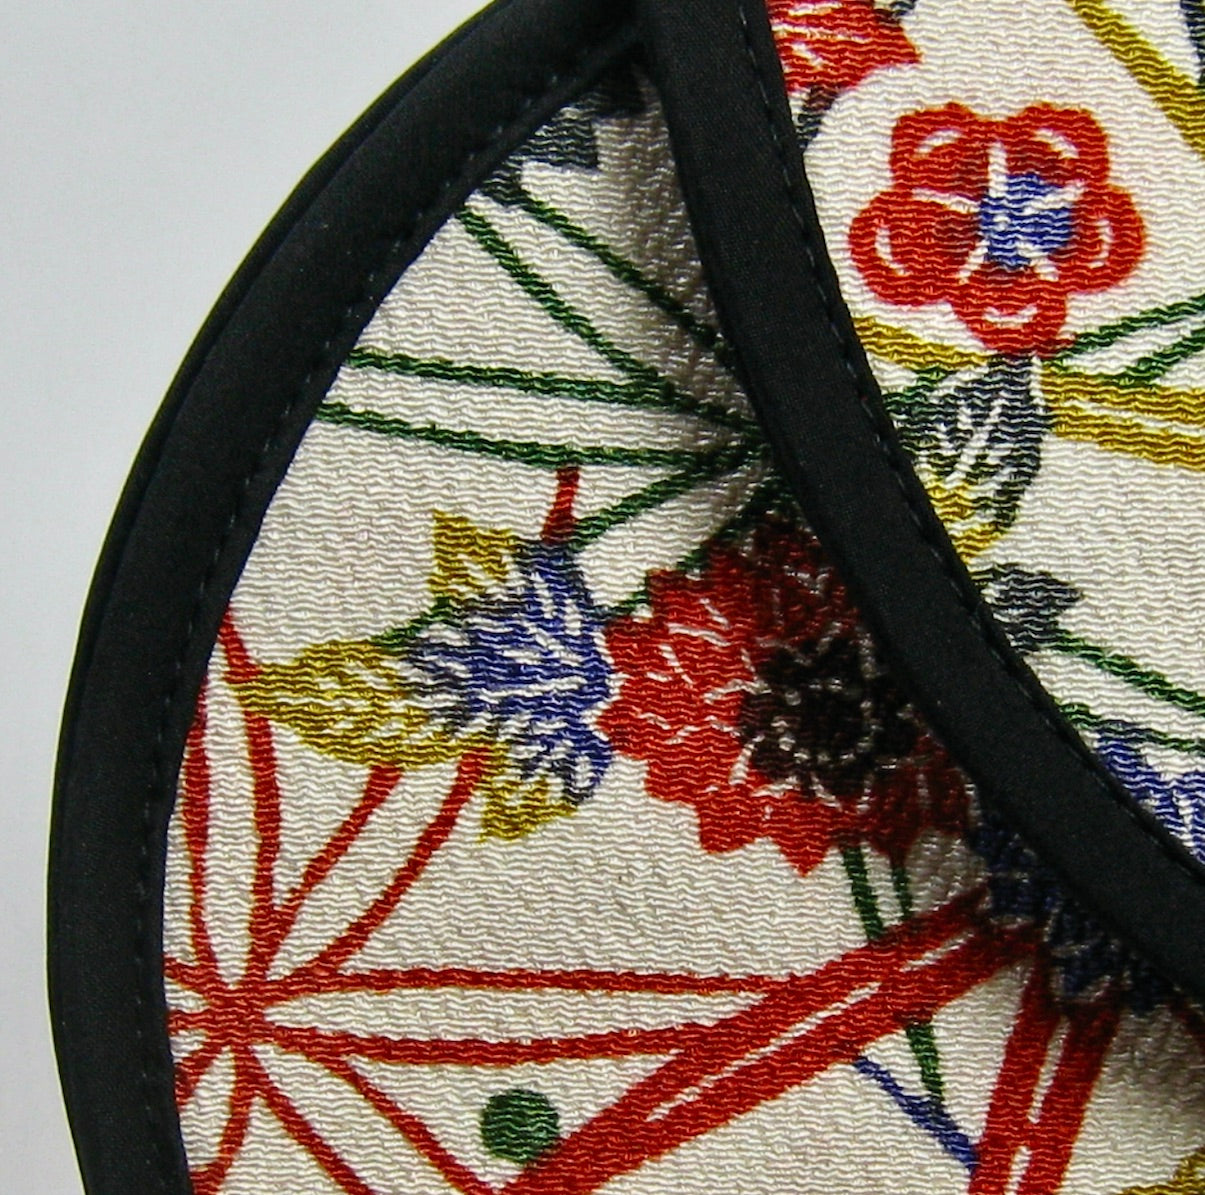 Oval Handbag - Bright Floral